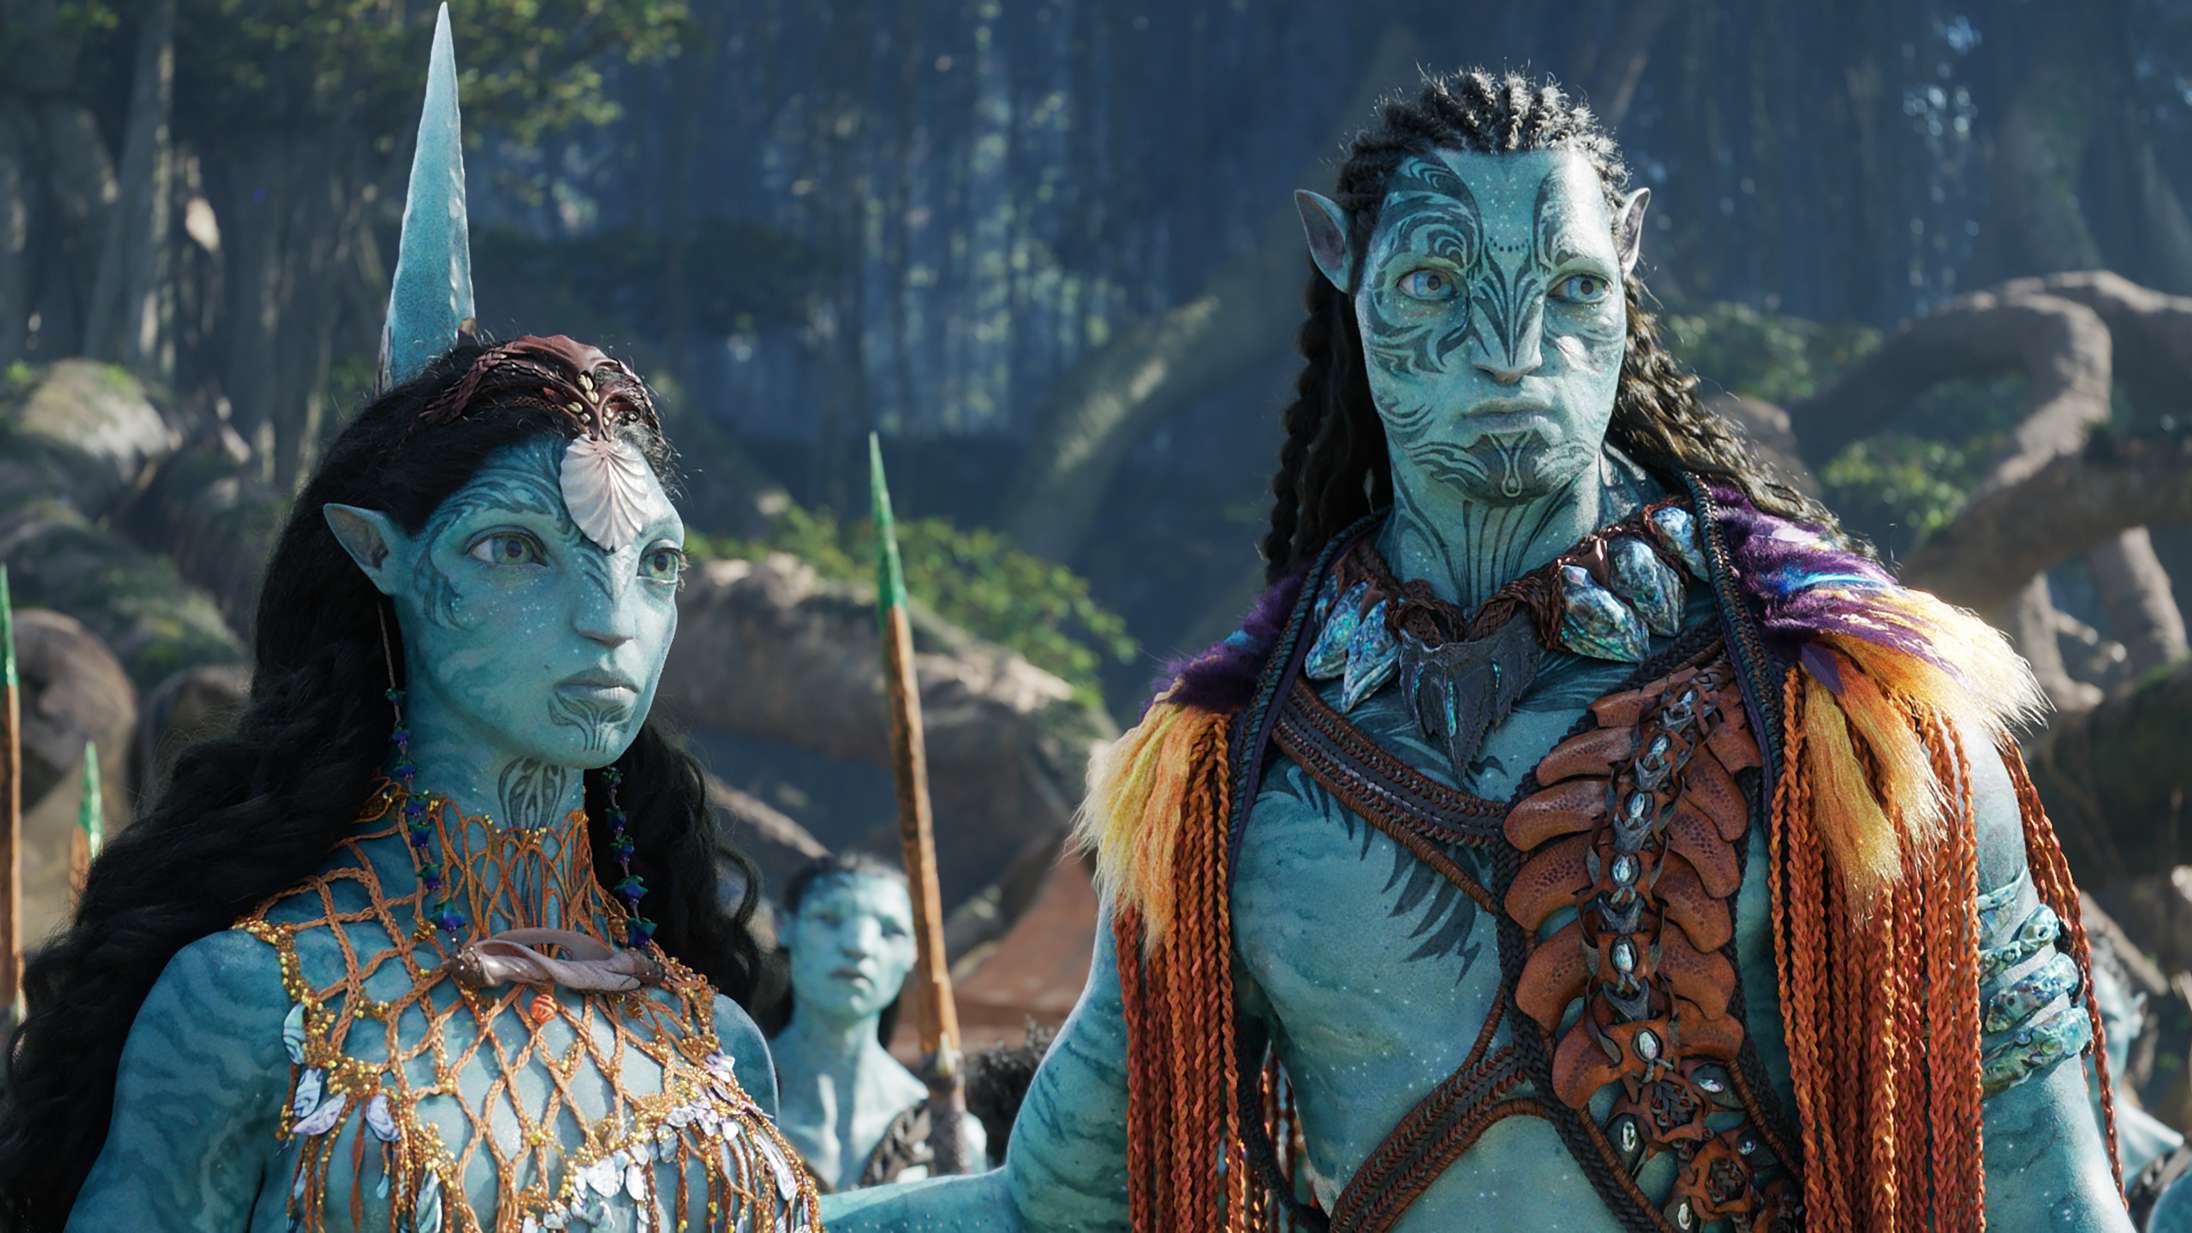 James Cameron sender stikpille til ‘Stranger Things’ for at forklare stor ‘Avatar’-beslutning